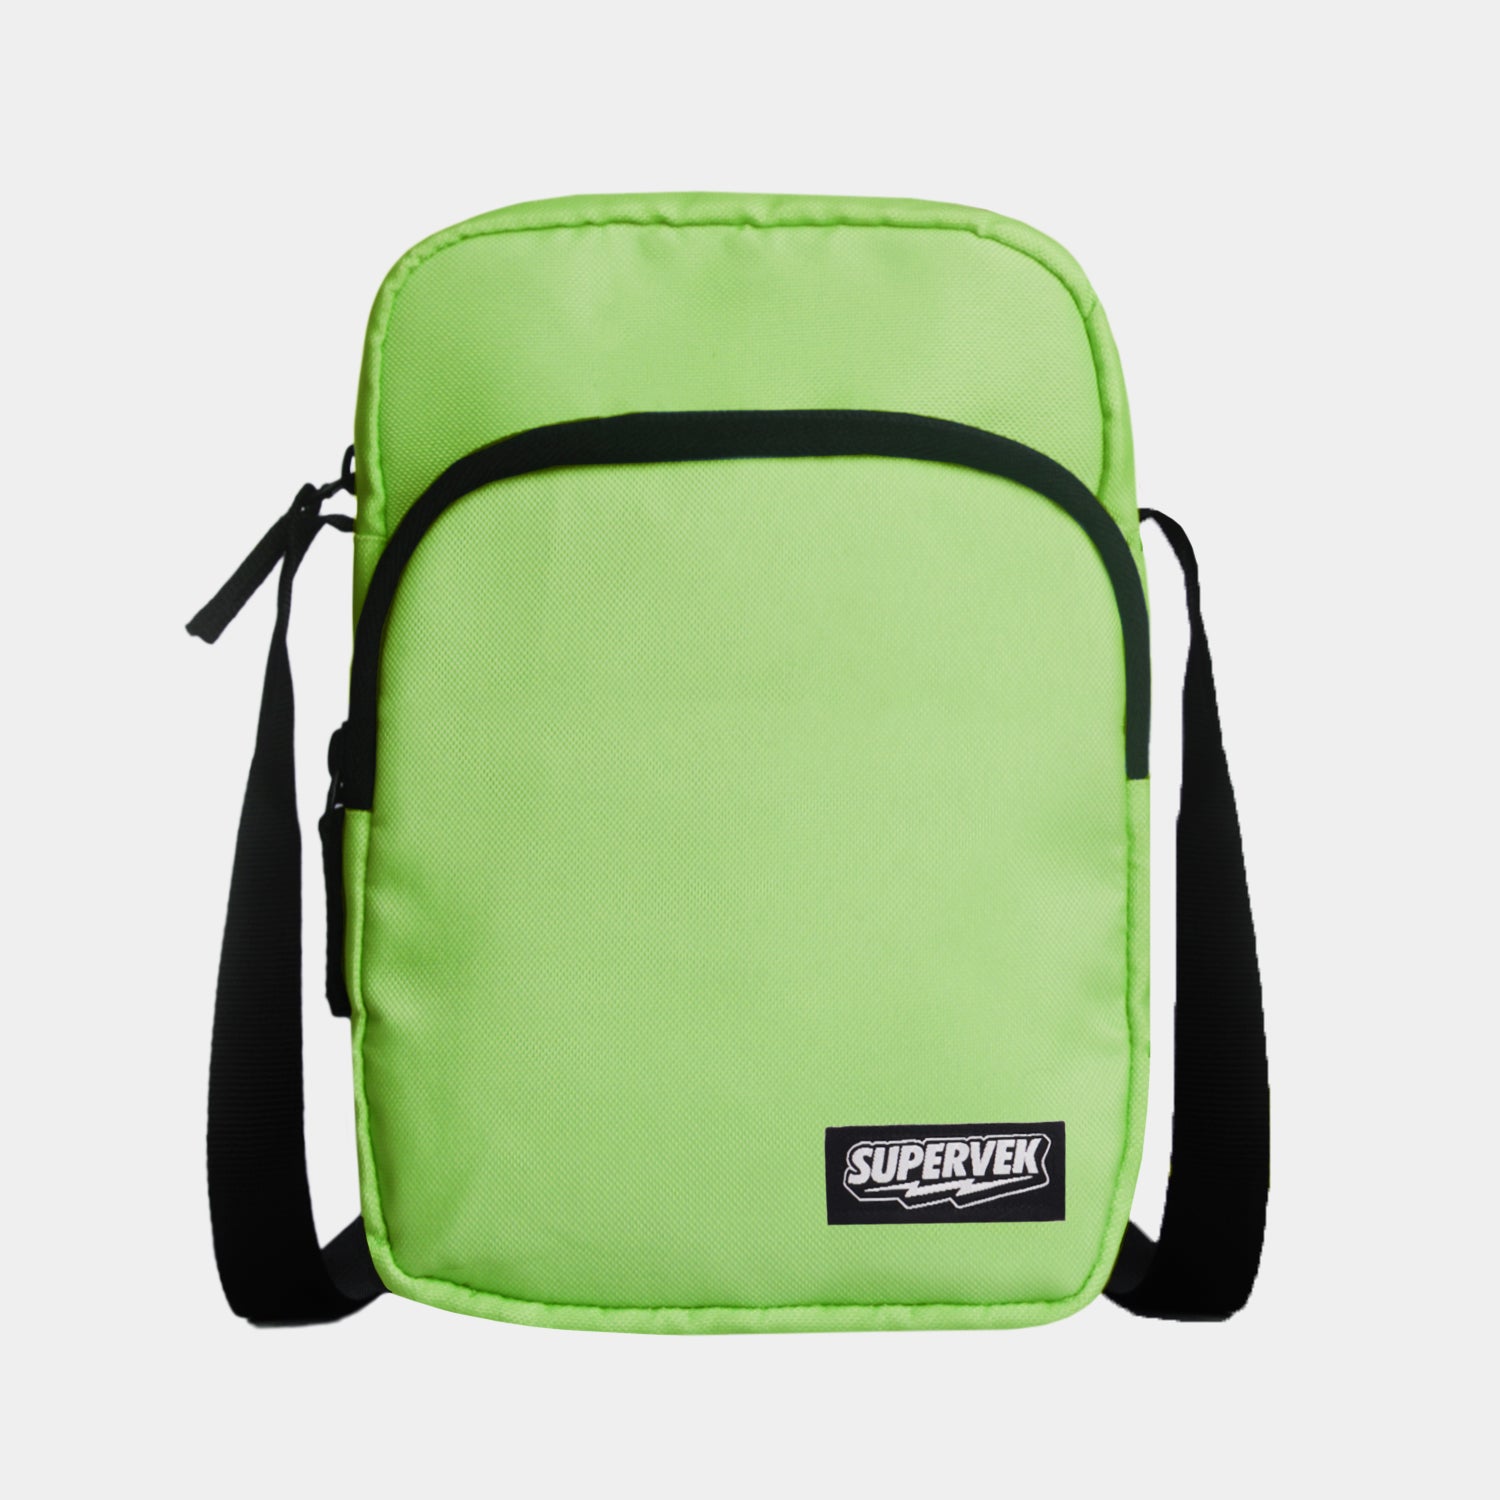 Care  Carry Mens Stylish Travel Office Business Messenger Adjustable  strap Shoulder Sling Bag